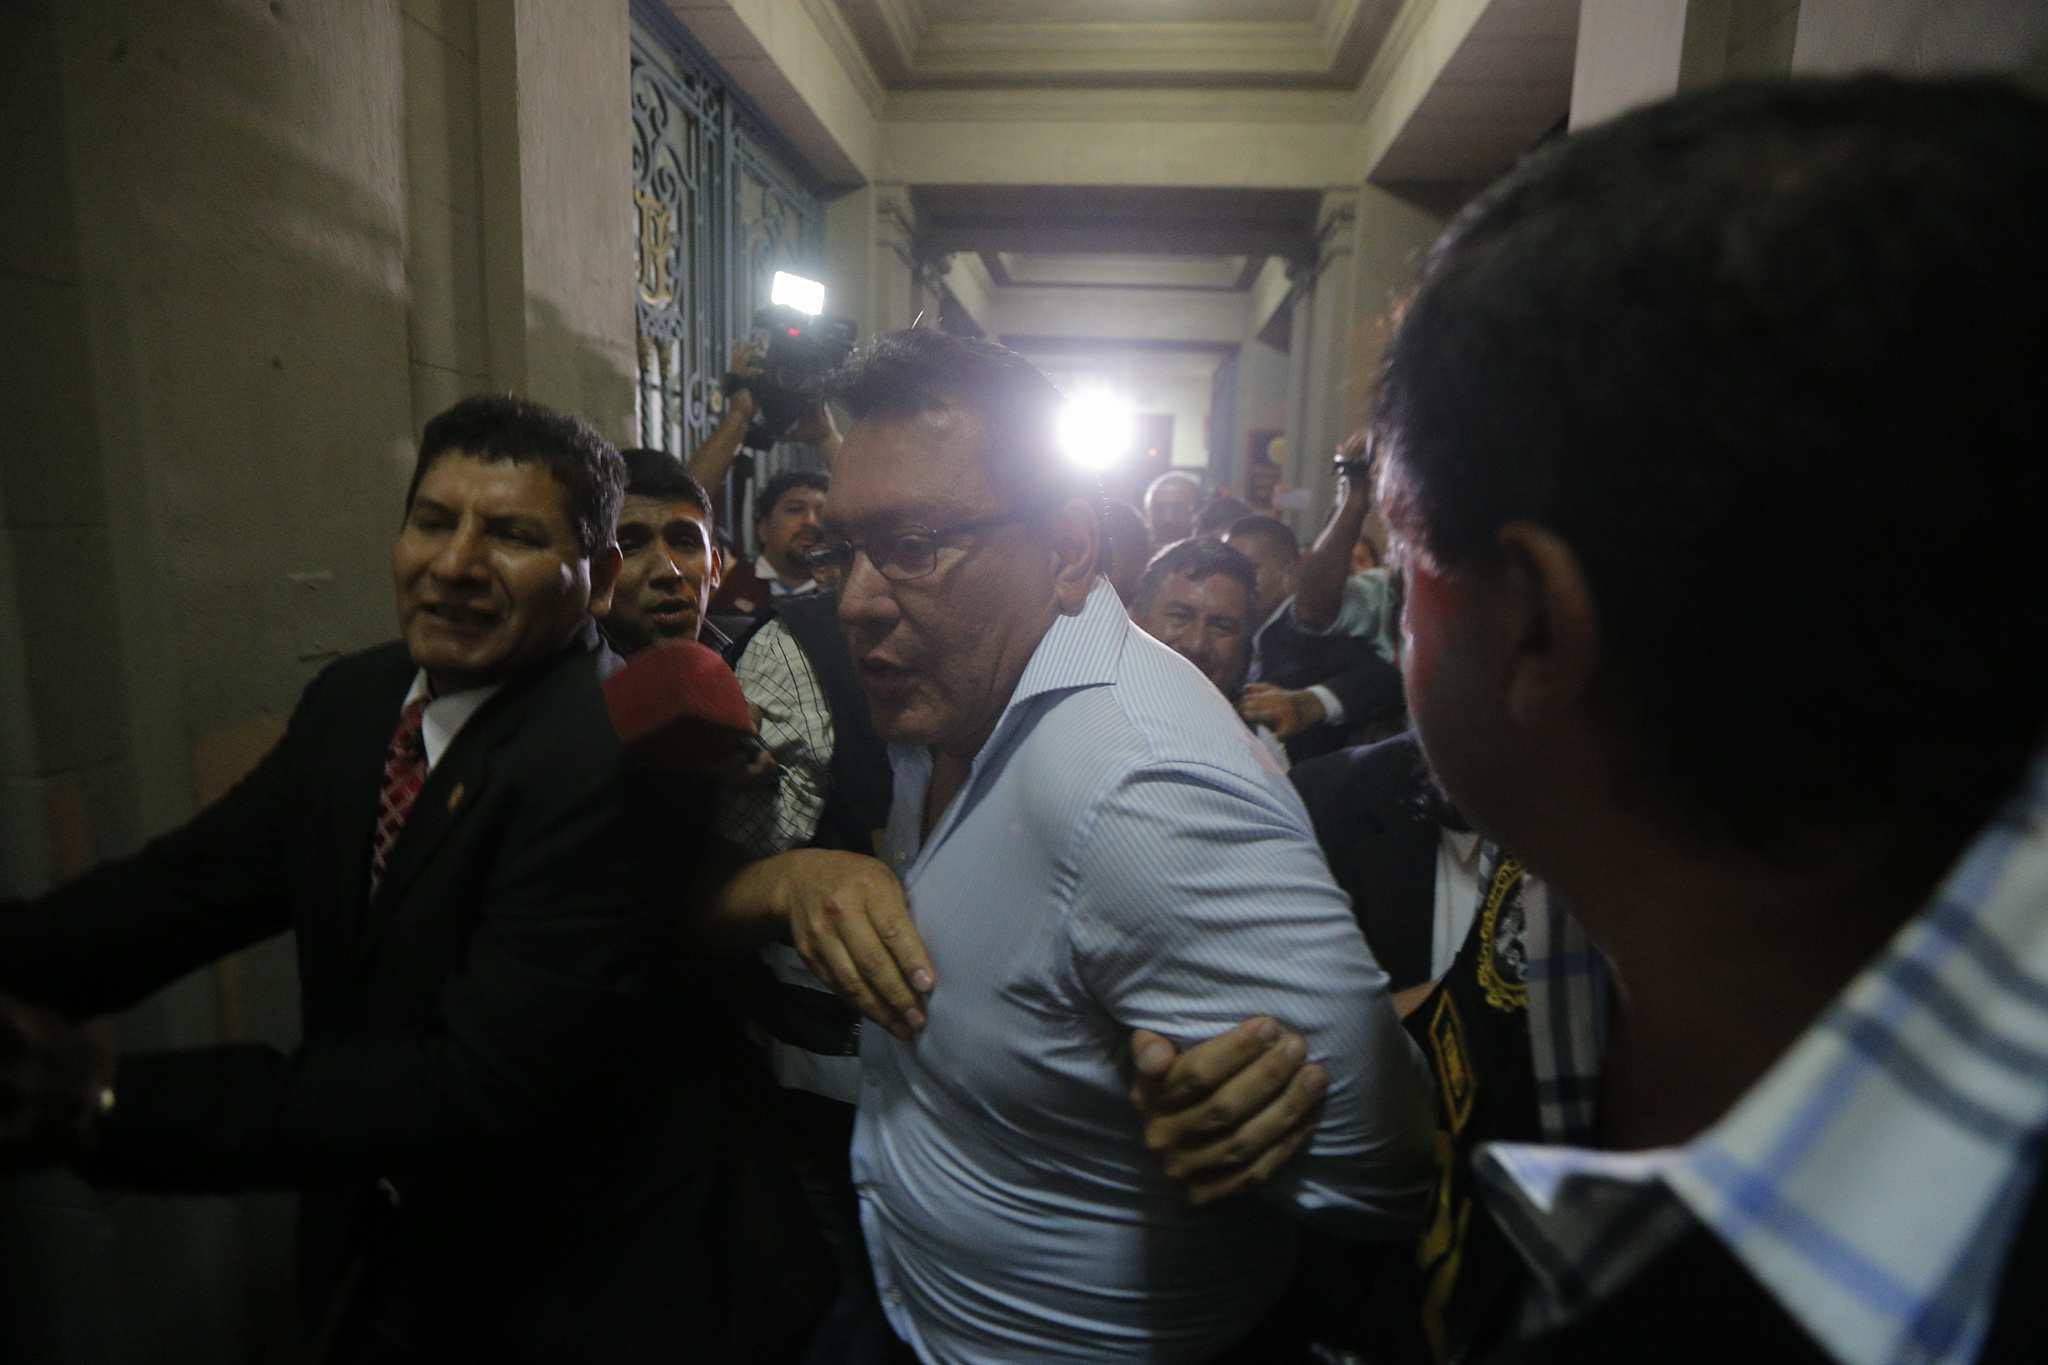 Juez dicta 18 meses de prisión preventiva para Félix Moreno, gobernador regional del Callao [FOTOS y VIDEO]